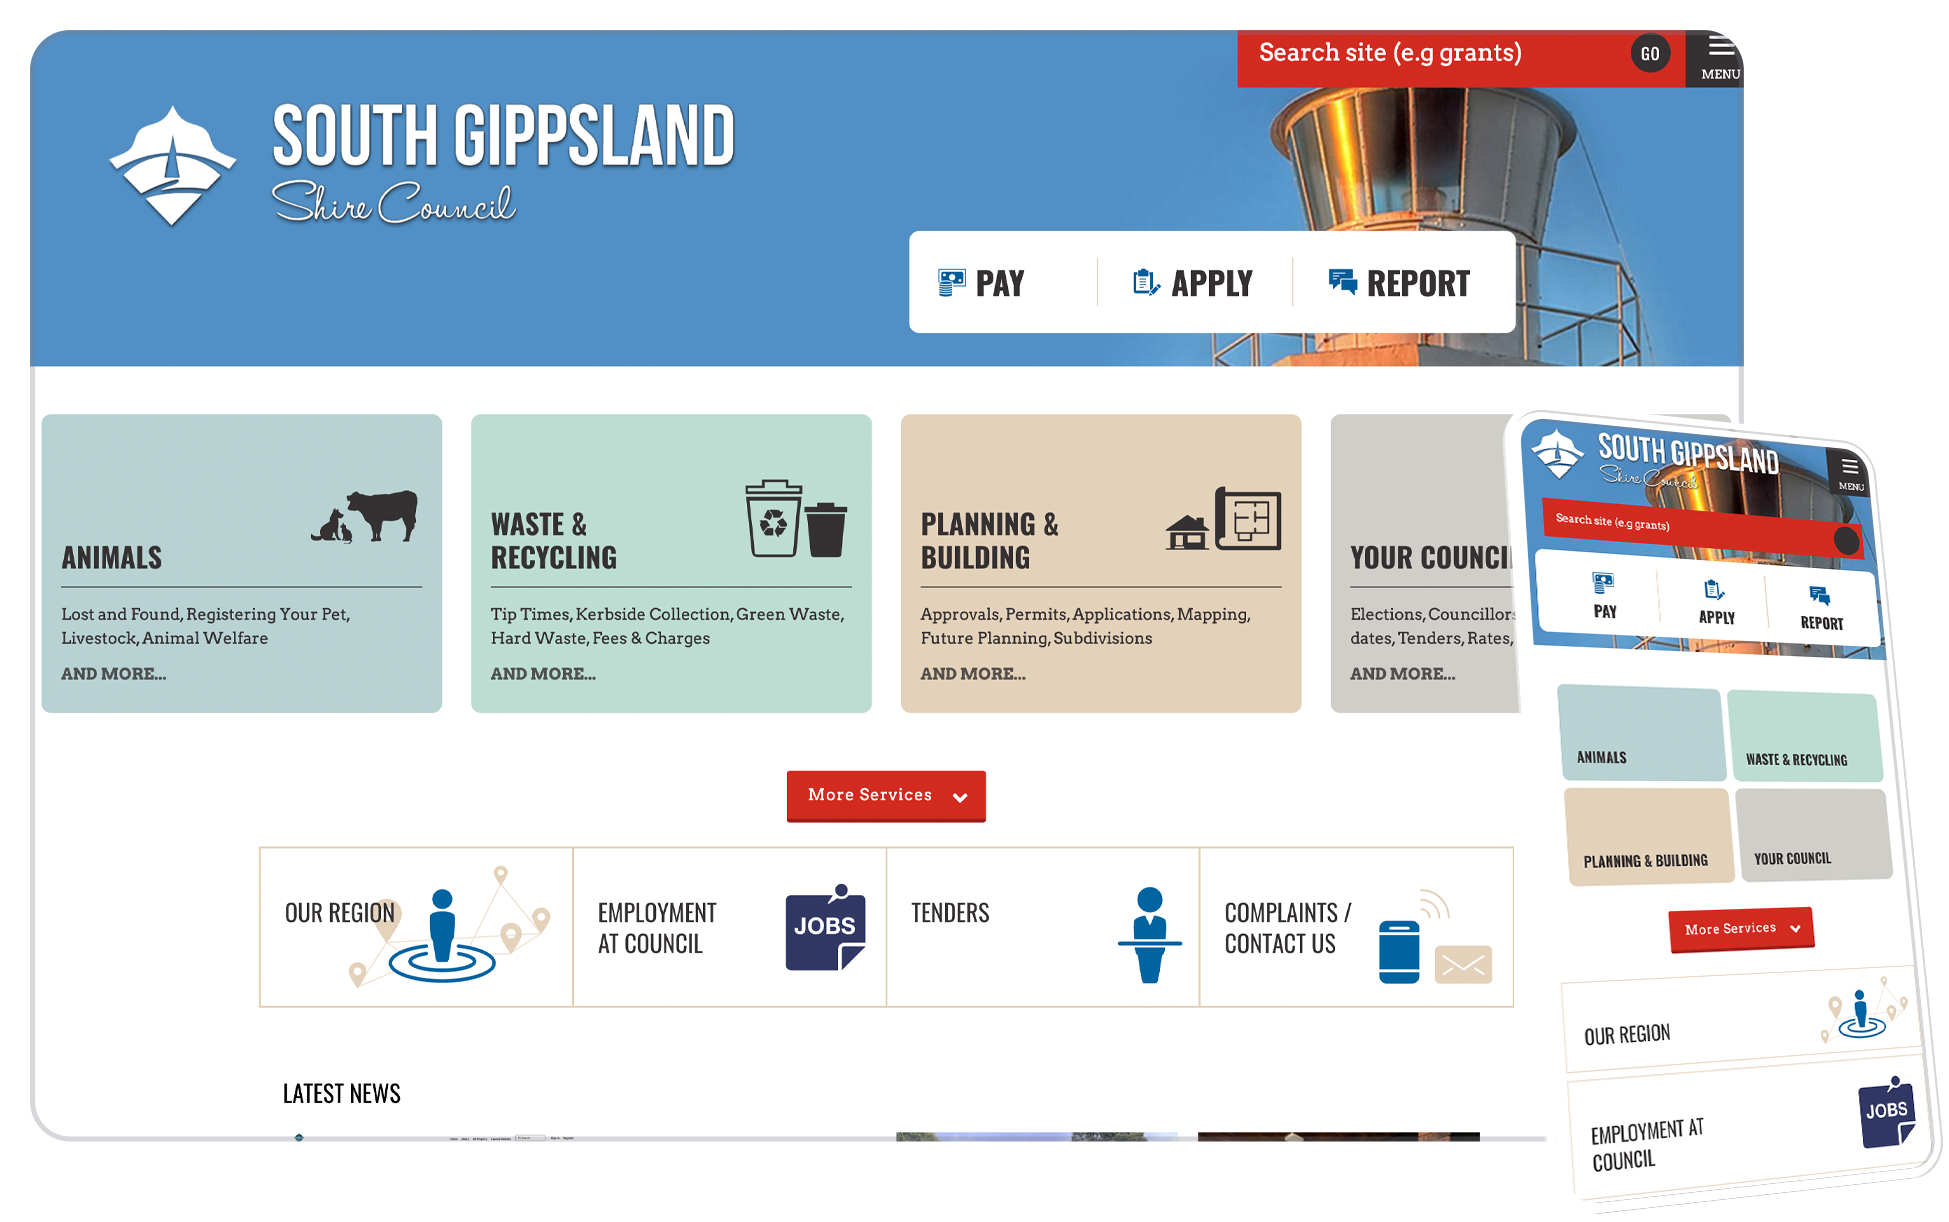 South Gippsland councils website